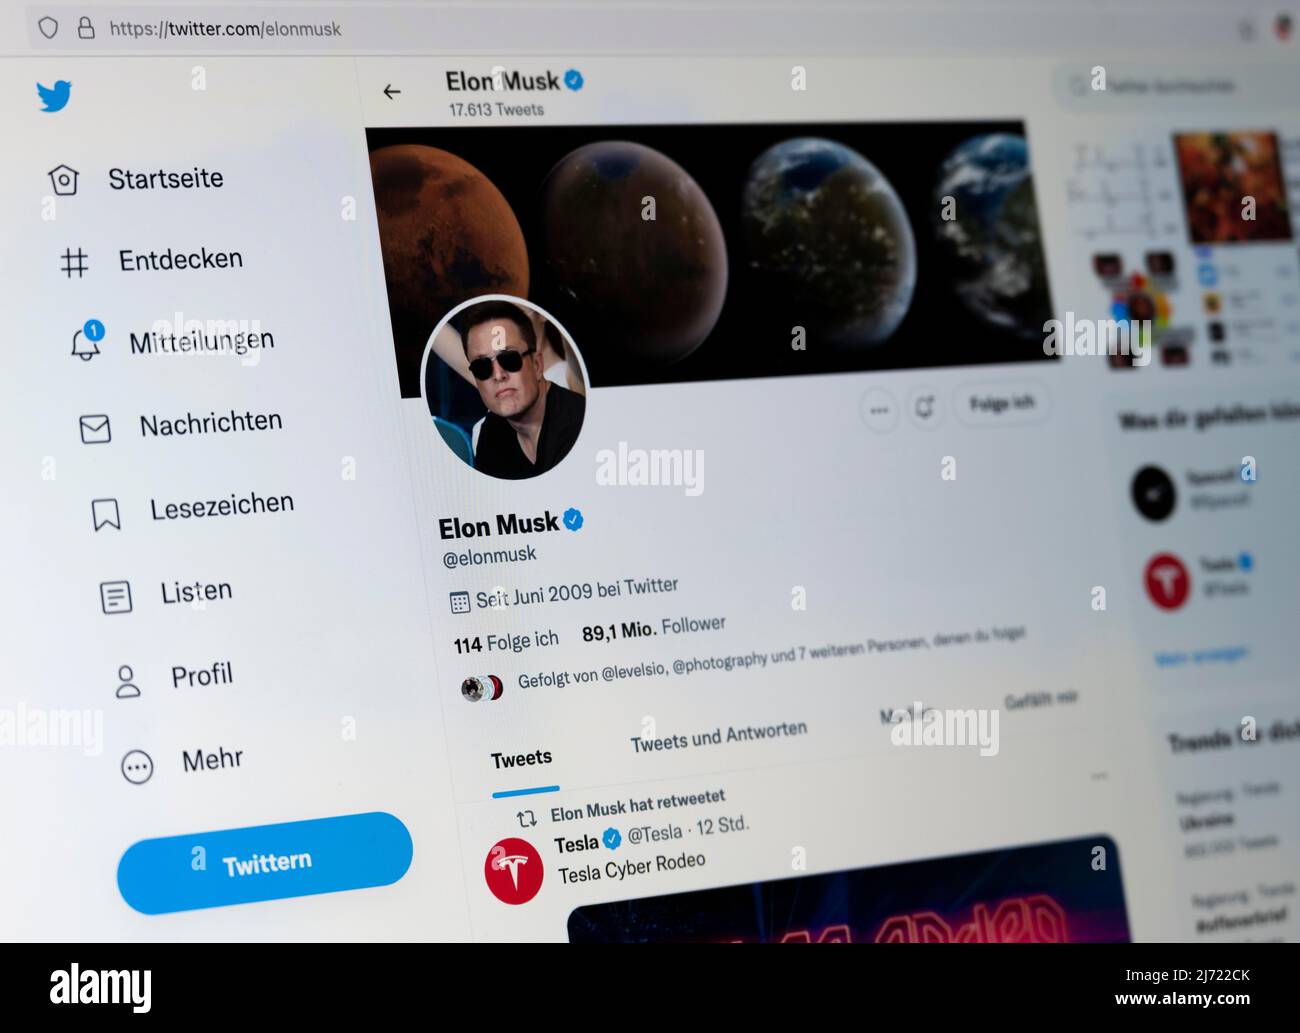 Twitter Seite des Unternehmers Elon Musk, Twitter, Soziales Netzwerk, Internet, Internetseite, Bildschirmfoto, dettaglio, Germania Foto Stock